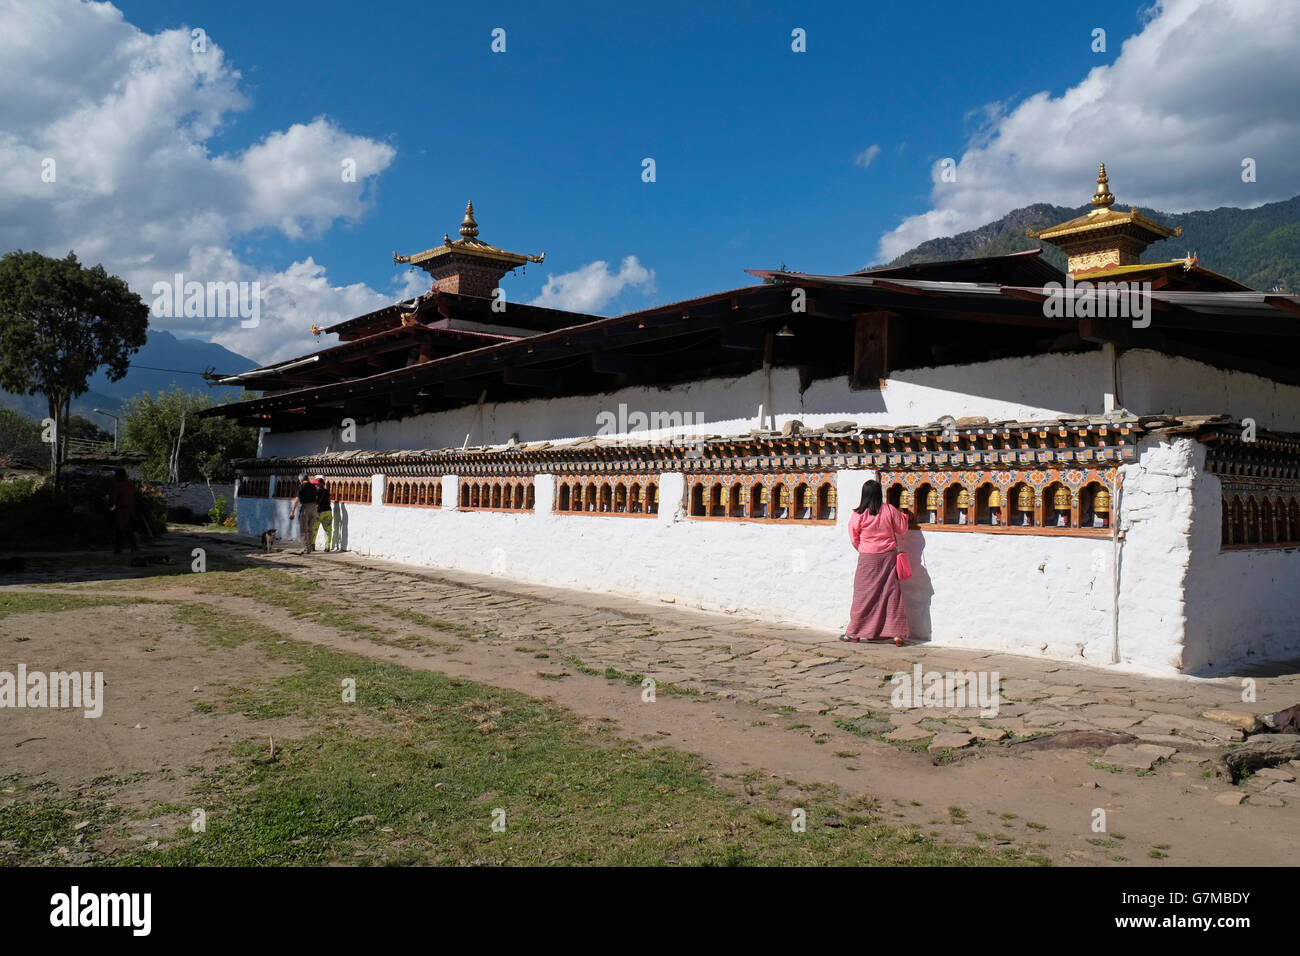 Un adorateur de l'roues de prière à l'arrière du Kyichu Lhakhang temple, Paro, Bhoutan. Banque D'Images